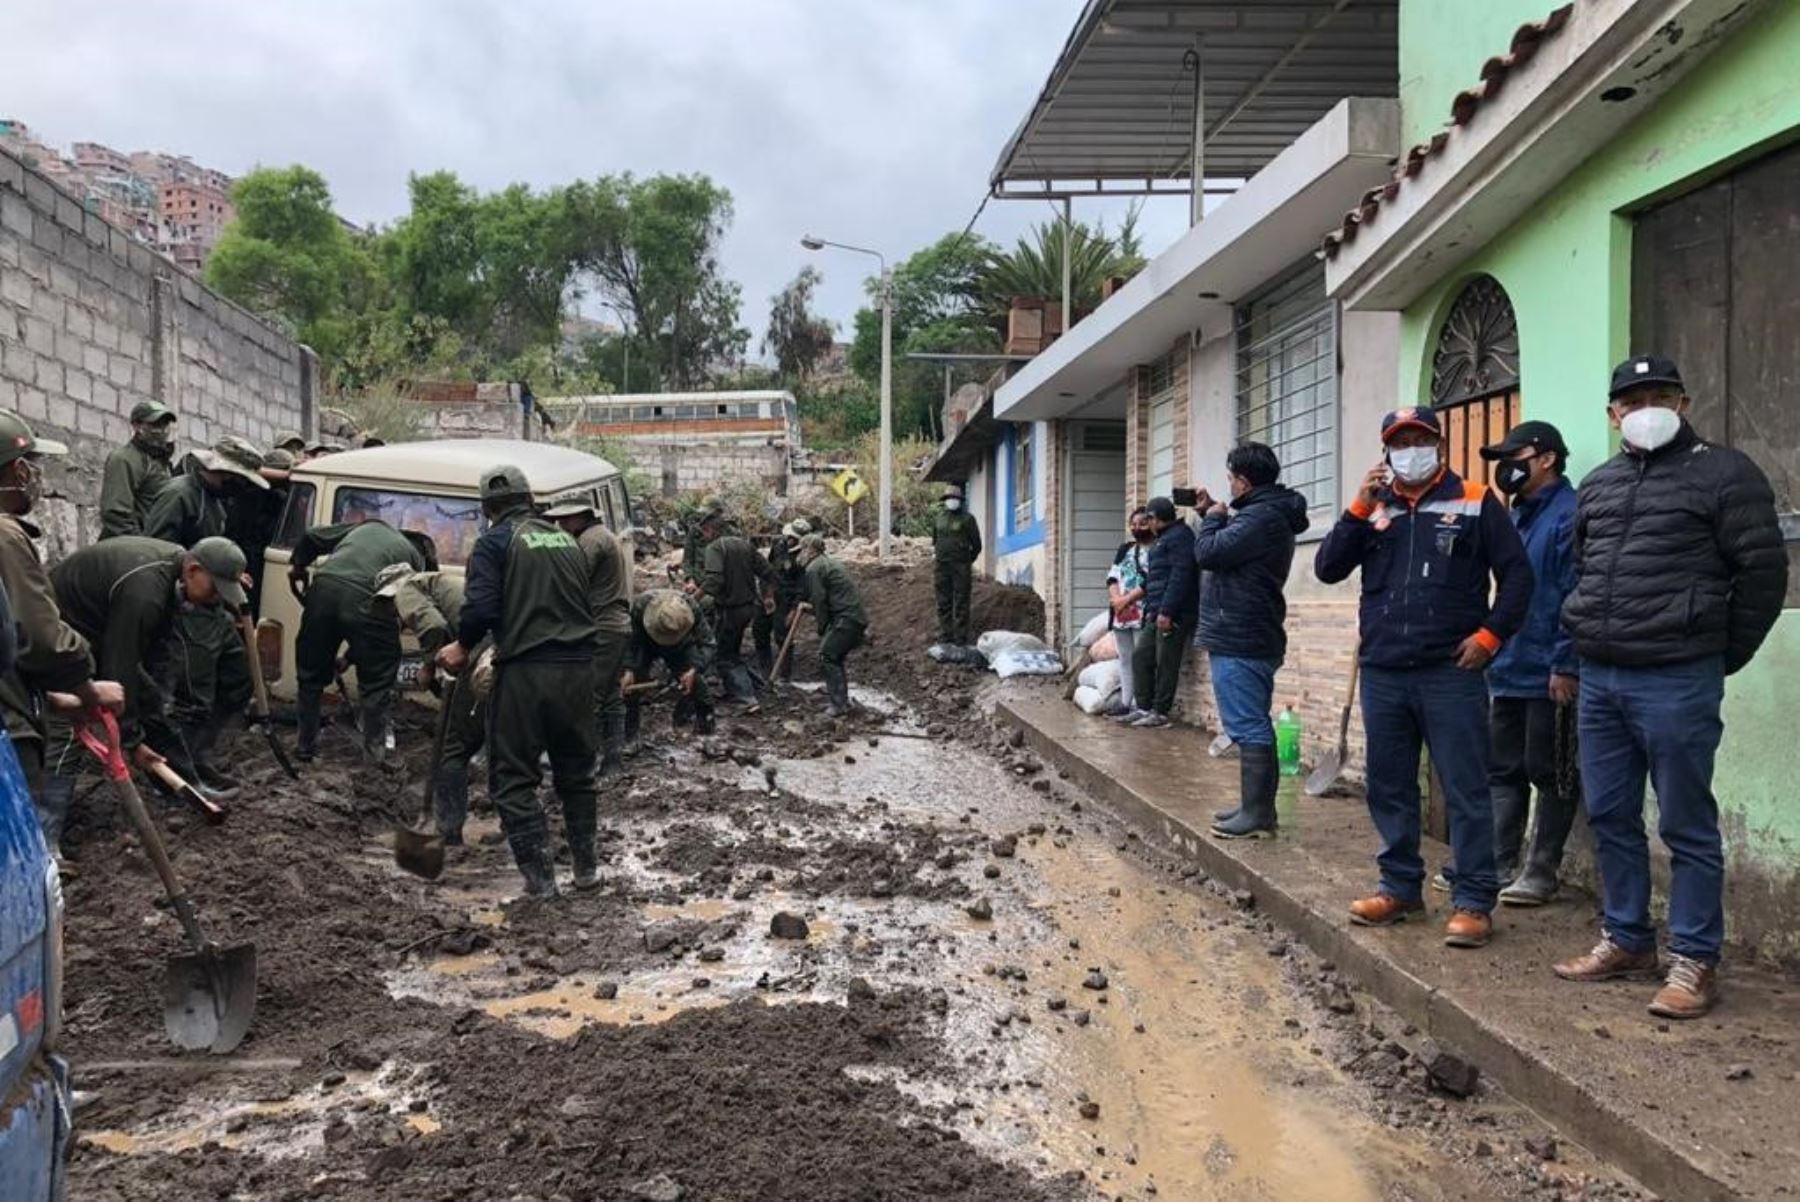 Sector del distrito de Paucarpata afectado por precipitaciones pluviales en la región Arequipa. ANDINA/Difusión